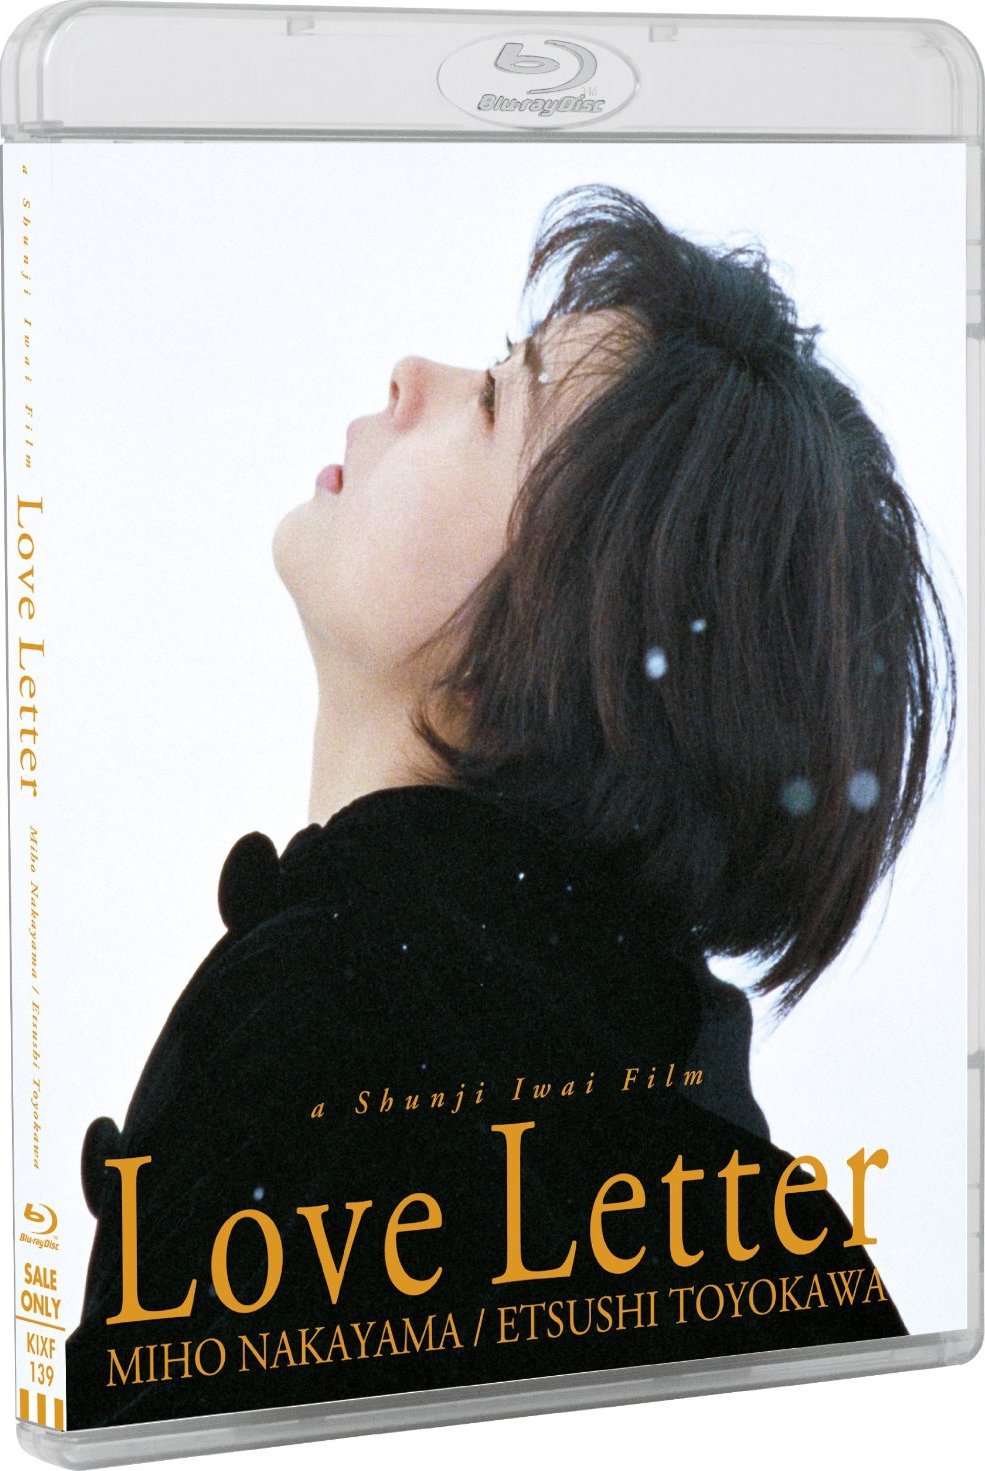 [情书].Love.Letter.1995.BluRay.1080p.AVC.TrueHD.5.1.DIY-Chinagear@HDStar     41.34G1 V; }8 [/ ~2 I1 |-2.jpg